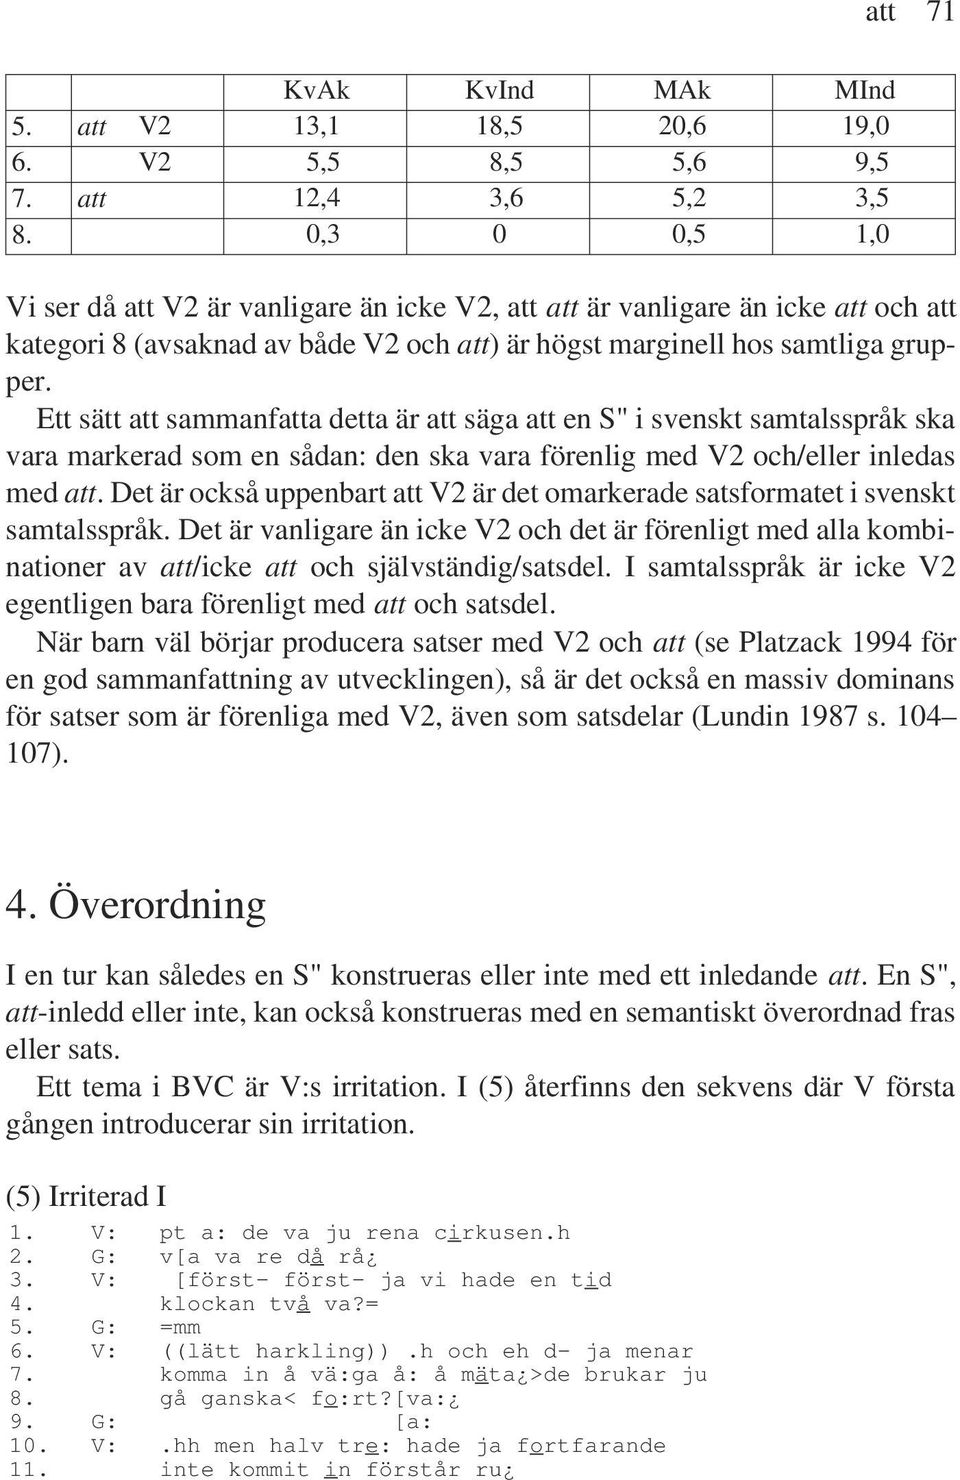 Ett sätt att sammanfatta detta är att säga att en S" i svenskt samtalsspråk ska vara markerad som en sådan: den ska vara förenlig med V2 och/eller inledas med att.